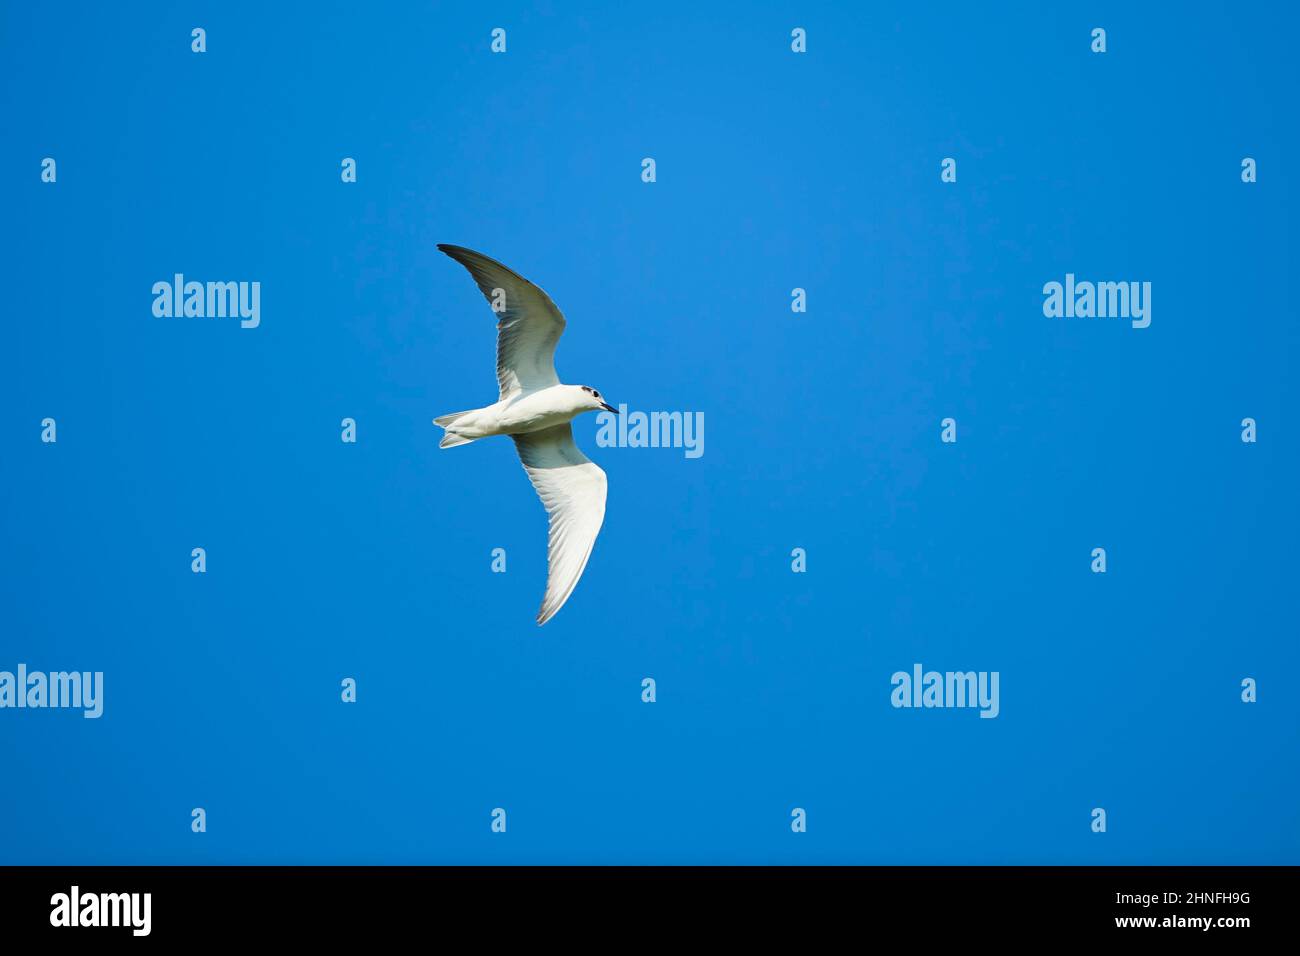 Arctic tern (Sterna paradisaea) flying in the sky, Ebro delta, Catalonia, Spain Stock Photo